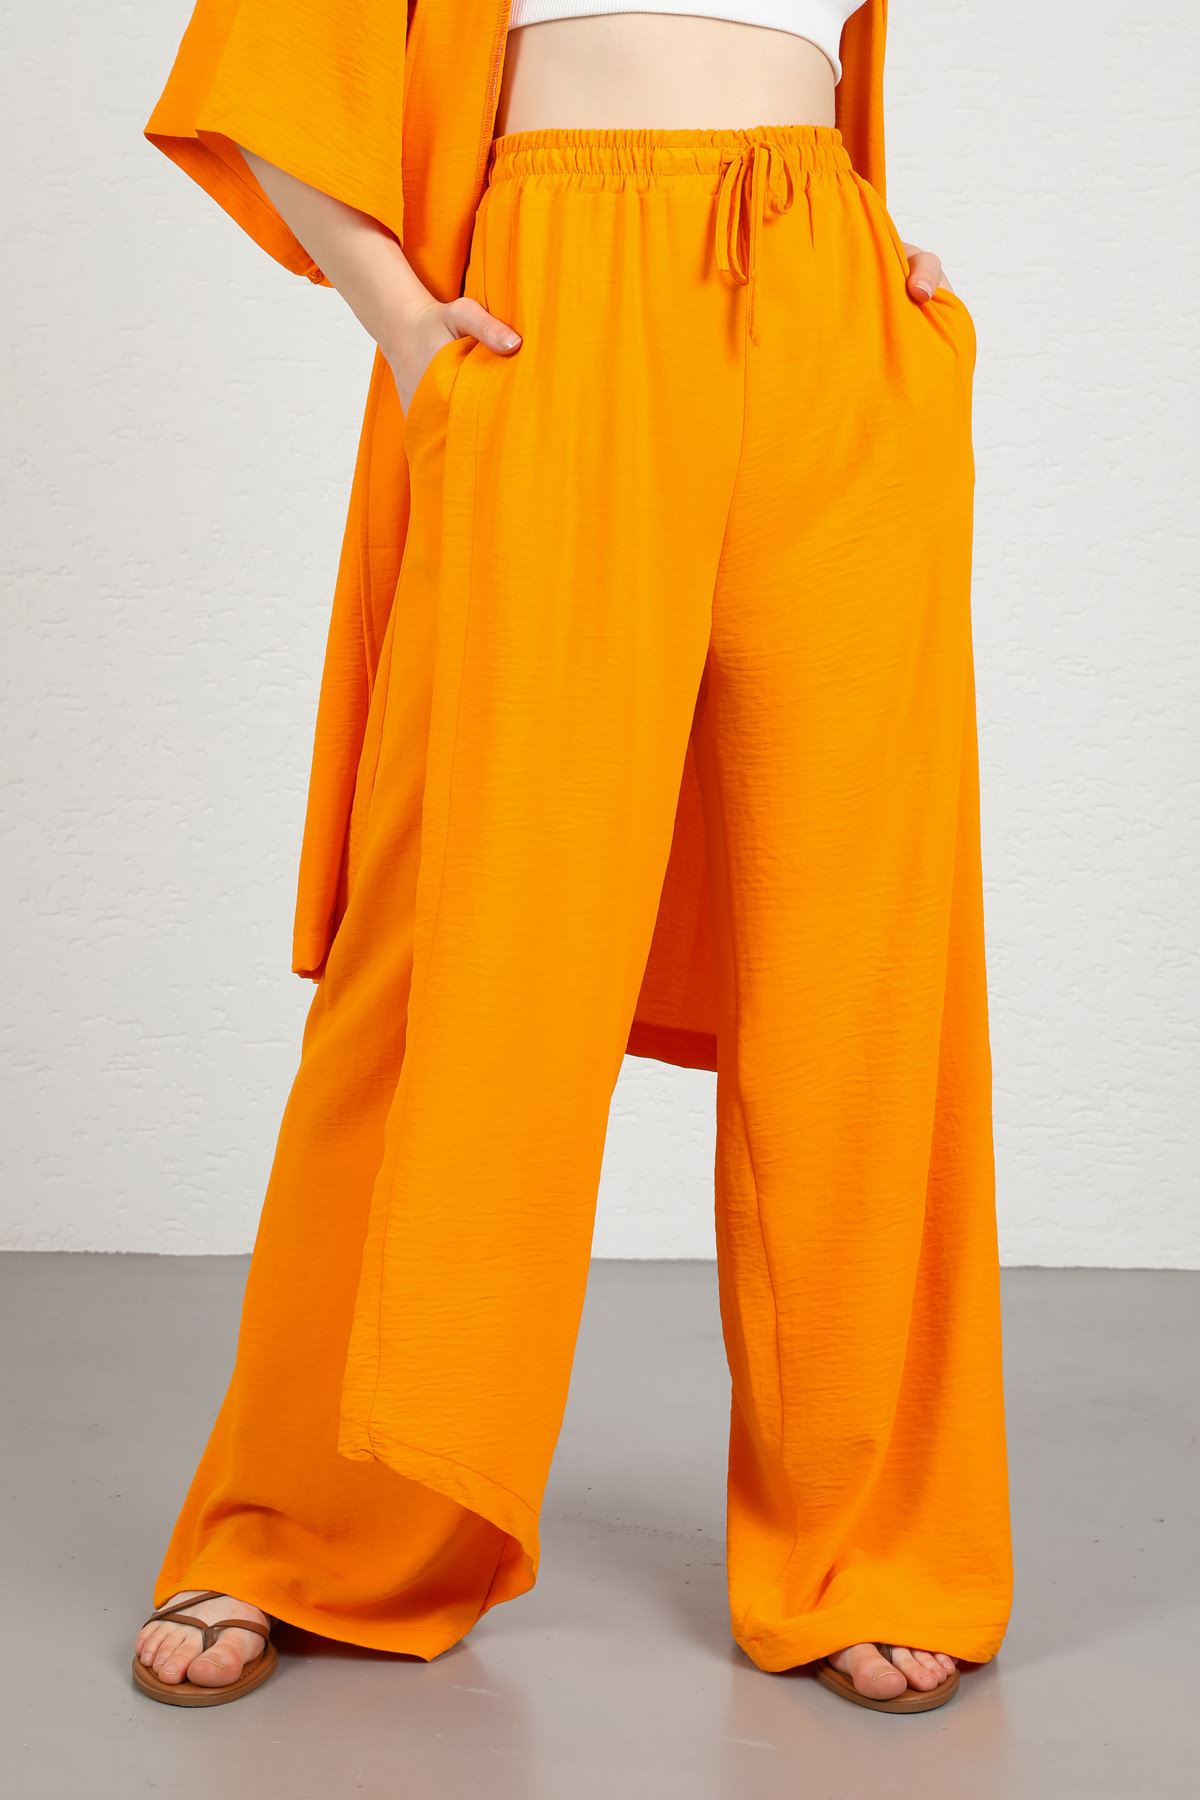 Seda Linen Fabric Elastic Waist Comfy Women Trouser-Orange